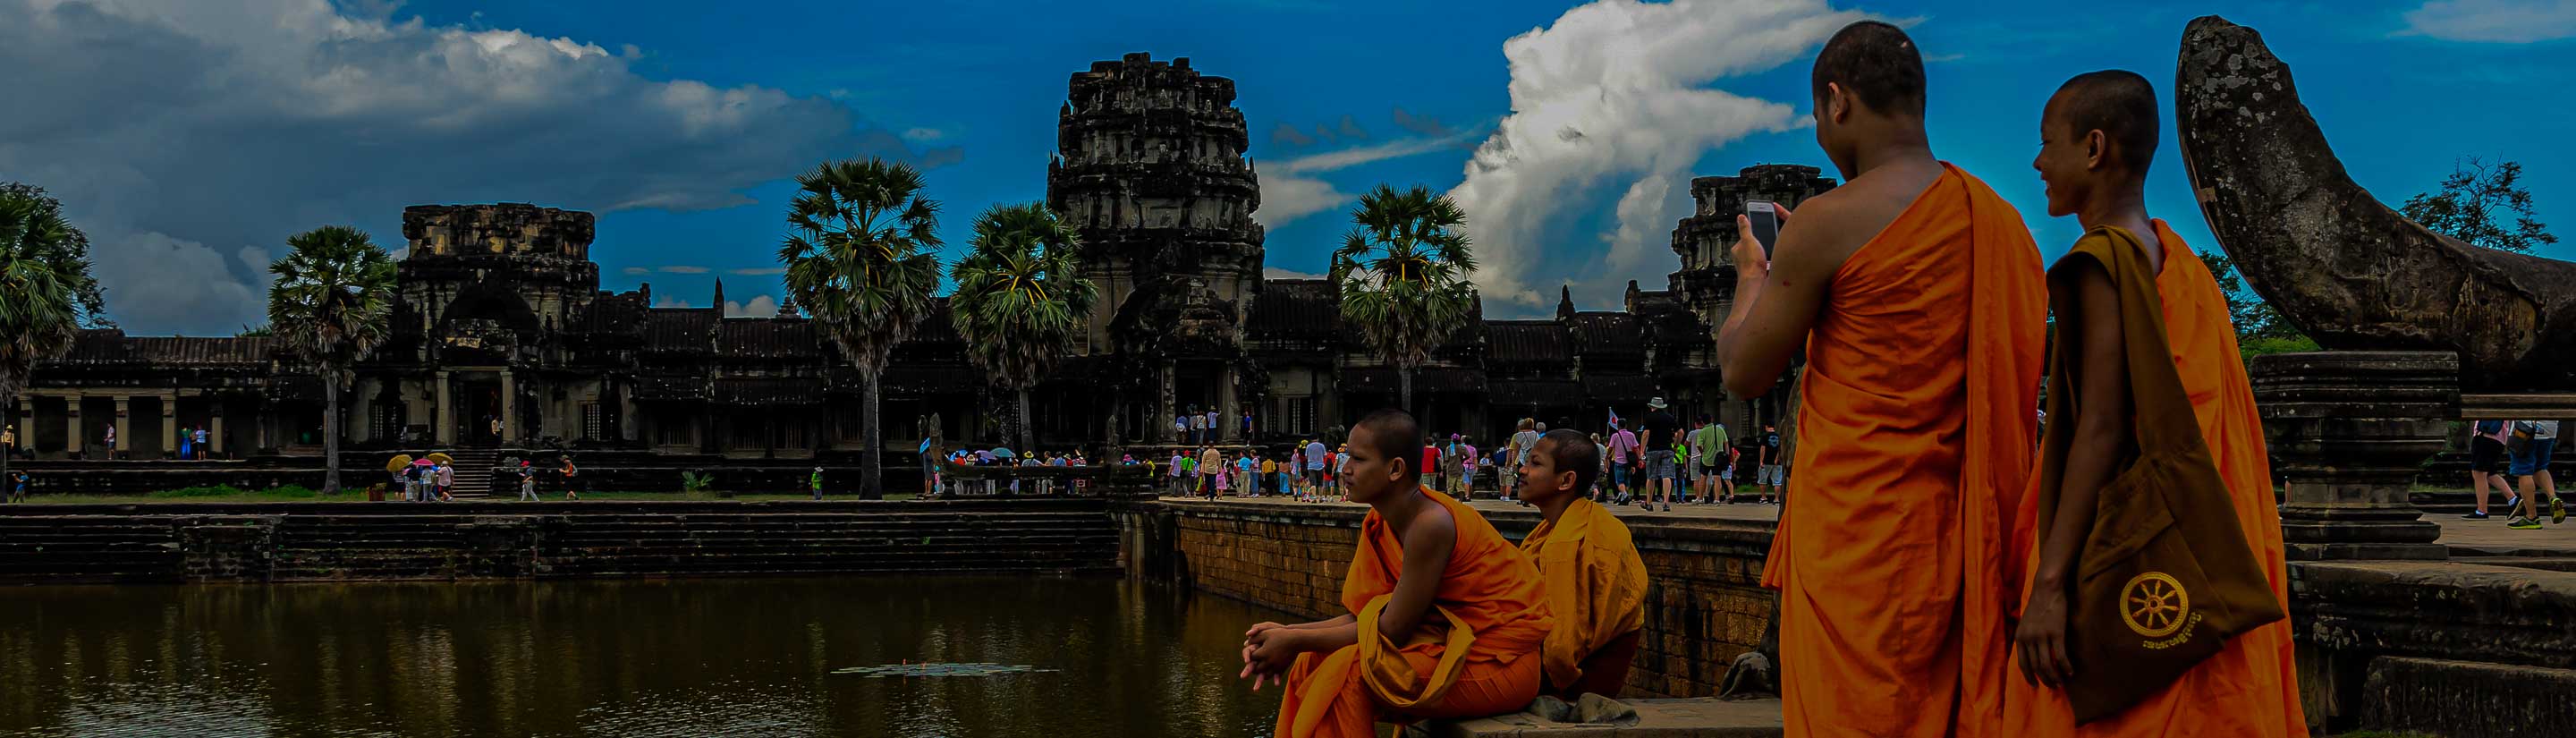 Buddhistische Mönche am Angkor Wat in Kambodscha